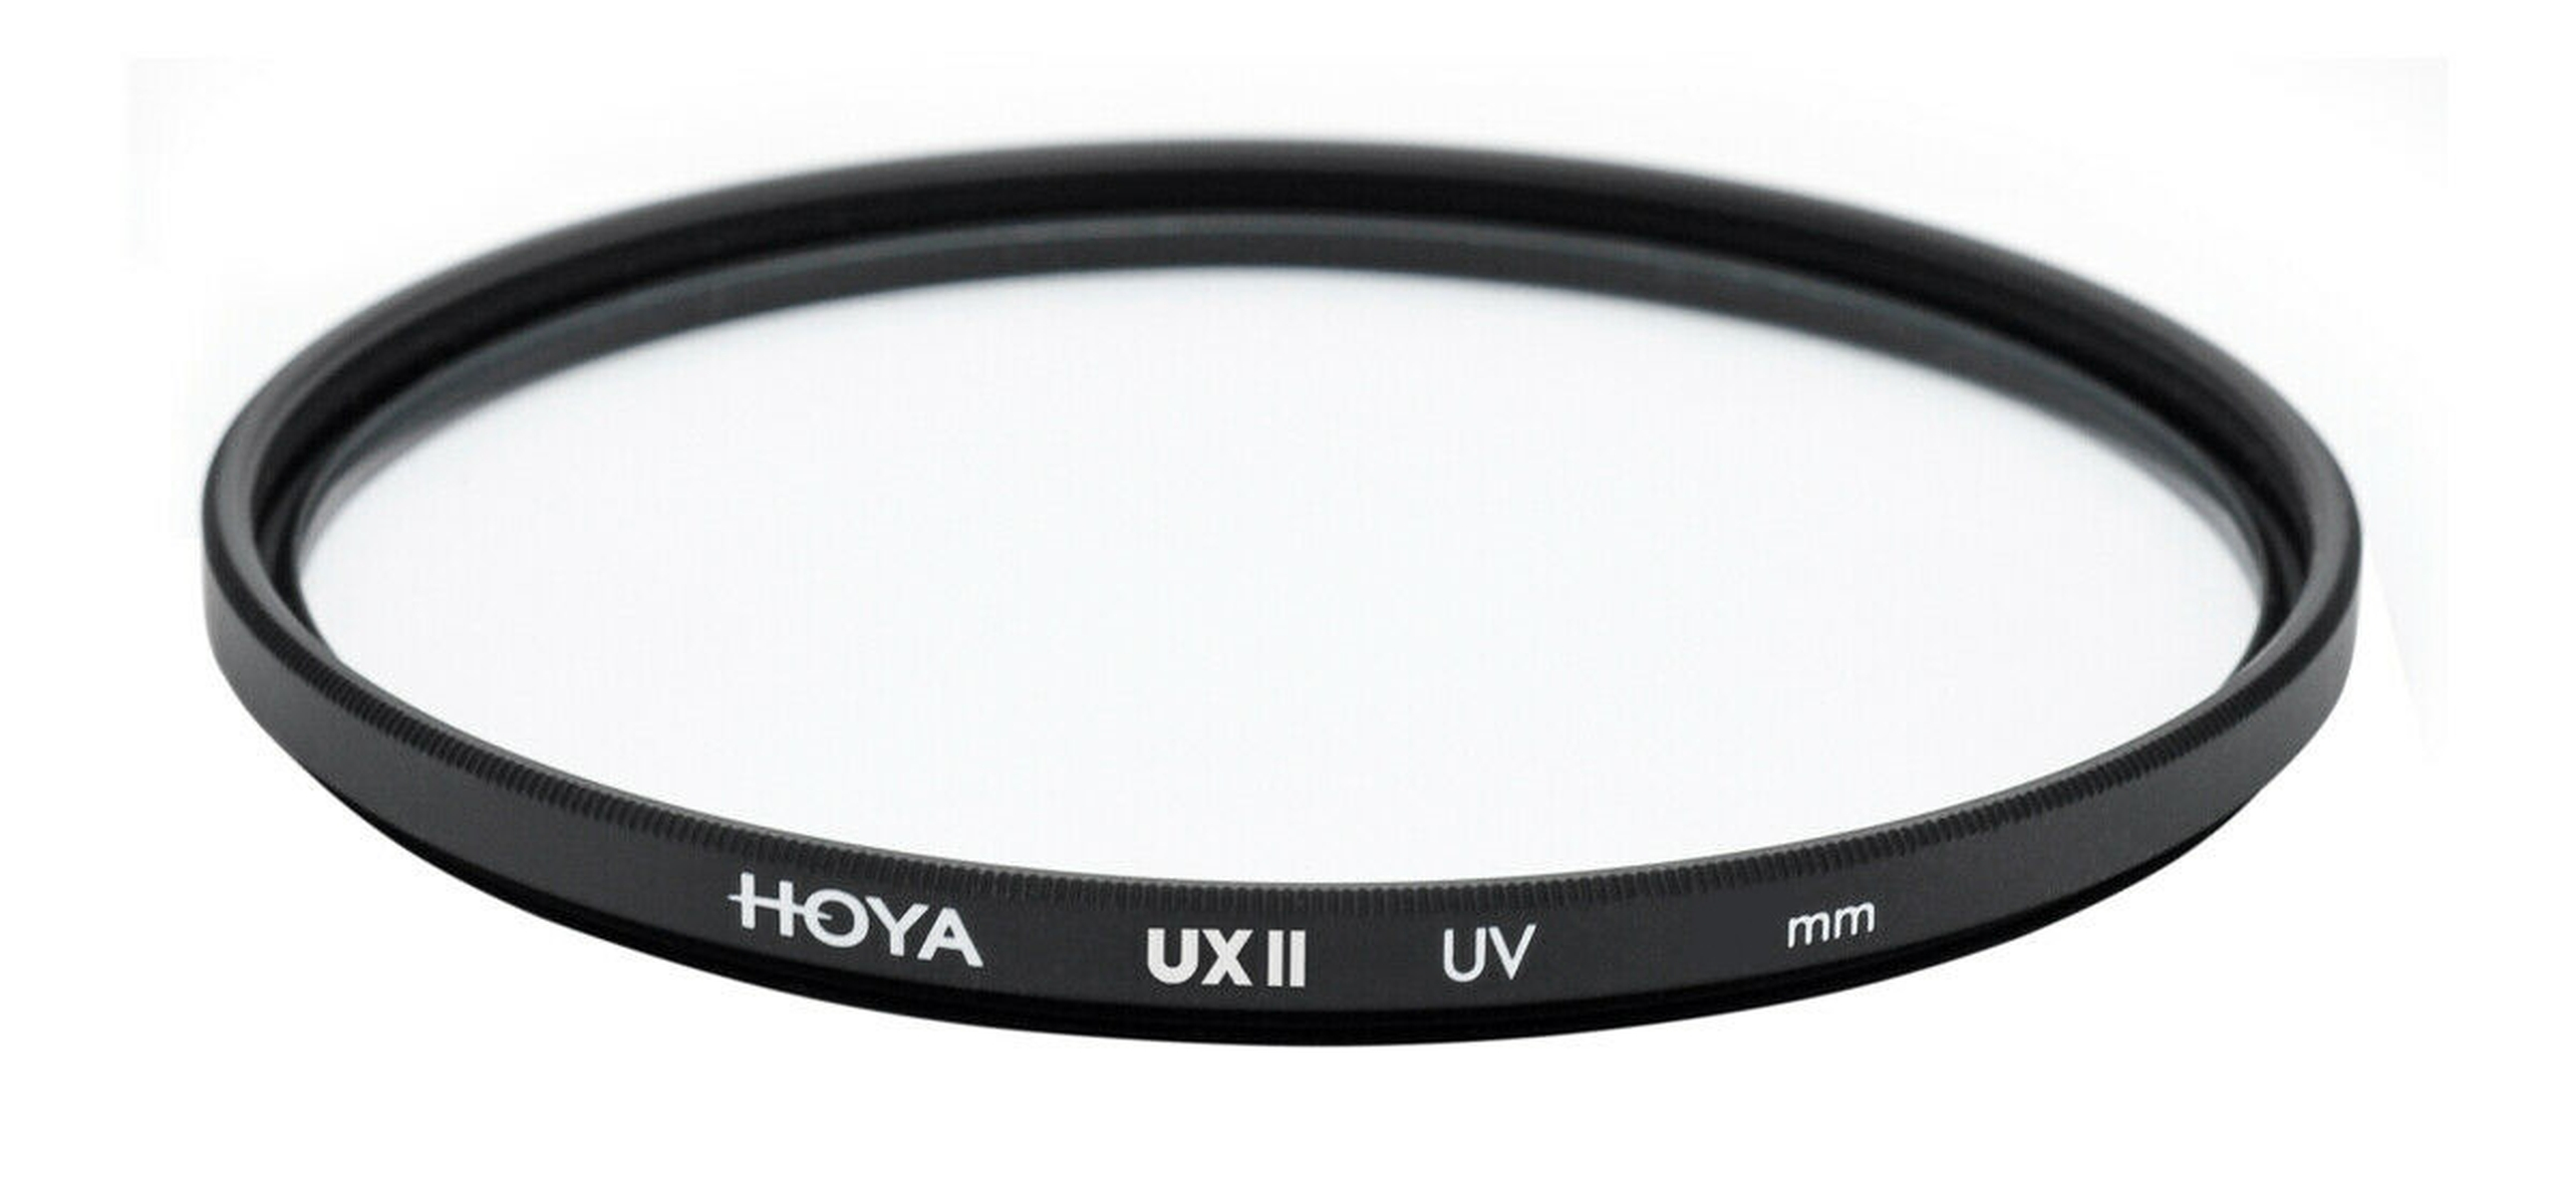 HOYA UV 43 Filter II mm UX